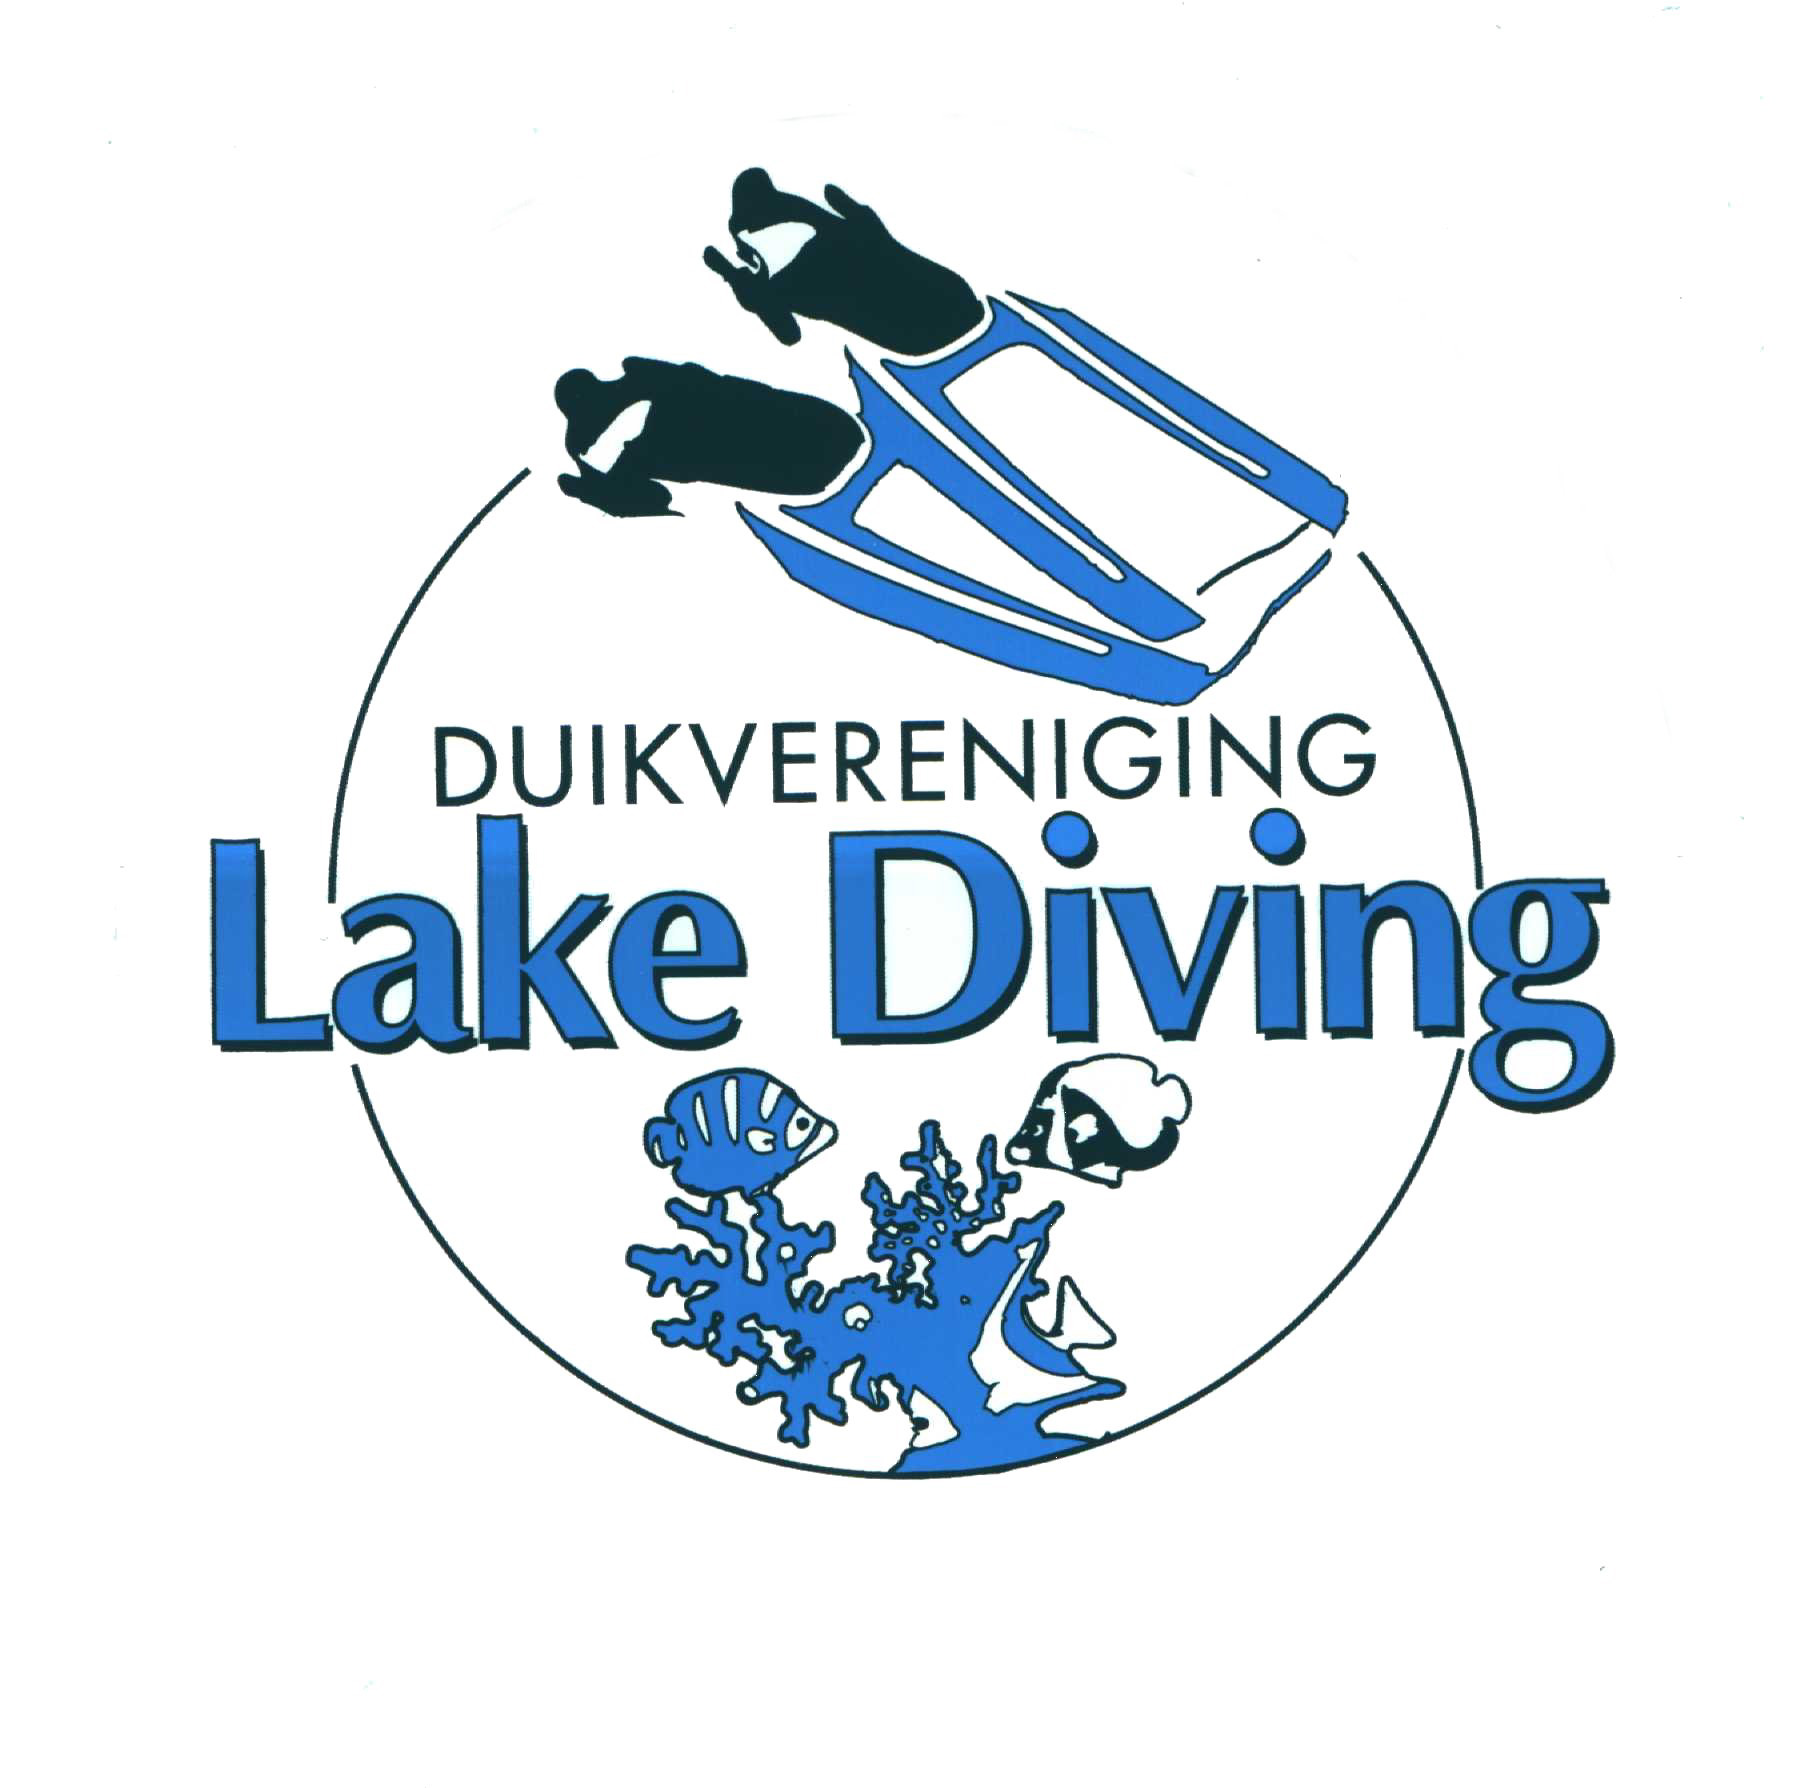 (c) Lakediving.nl